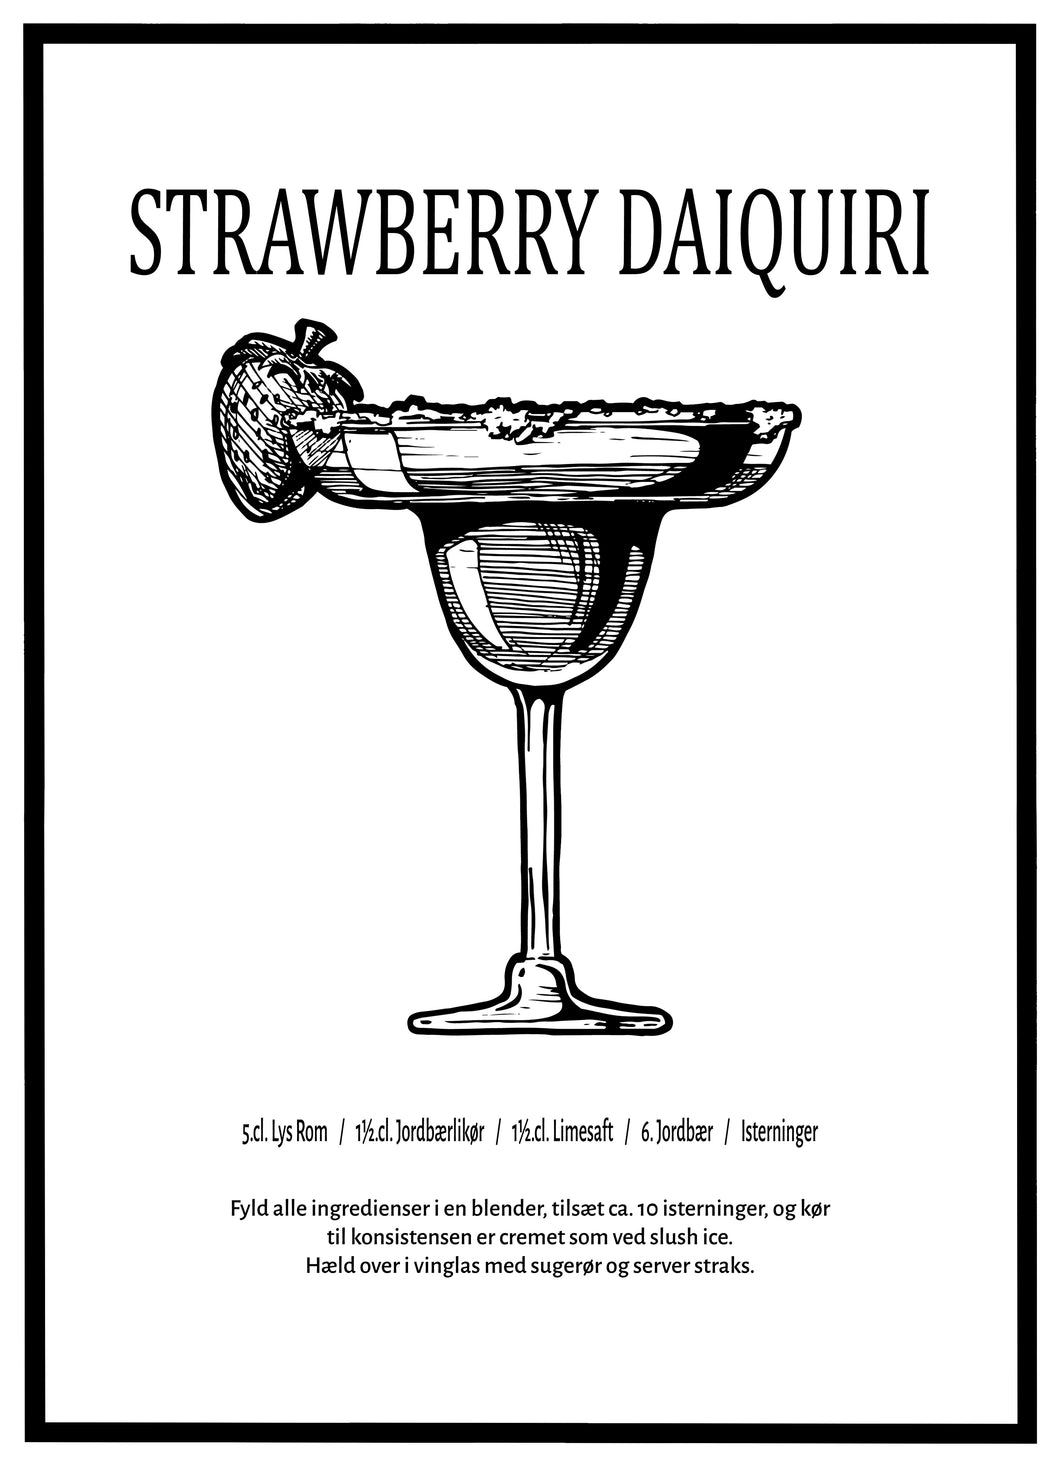 Strawberry Daiquiri - Plakat